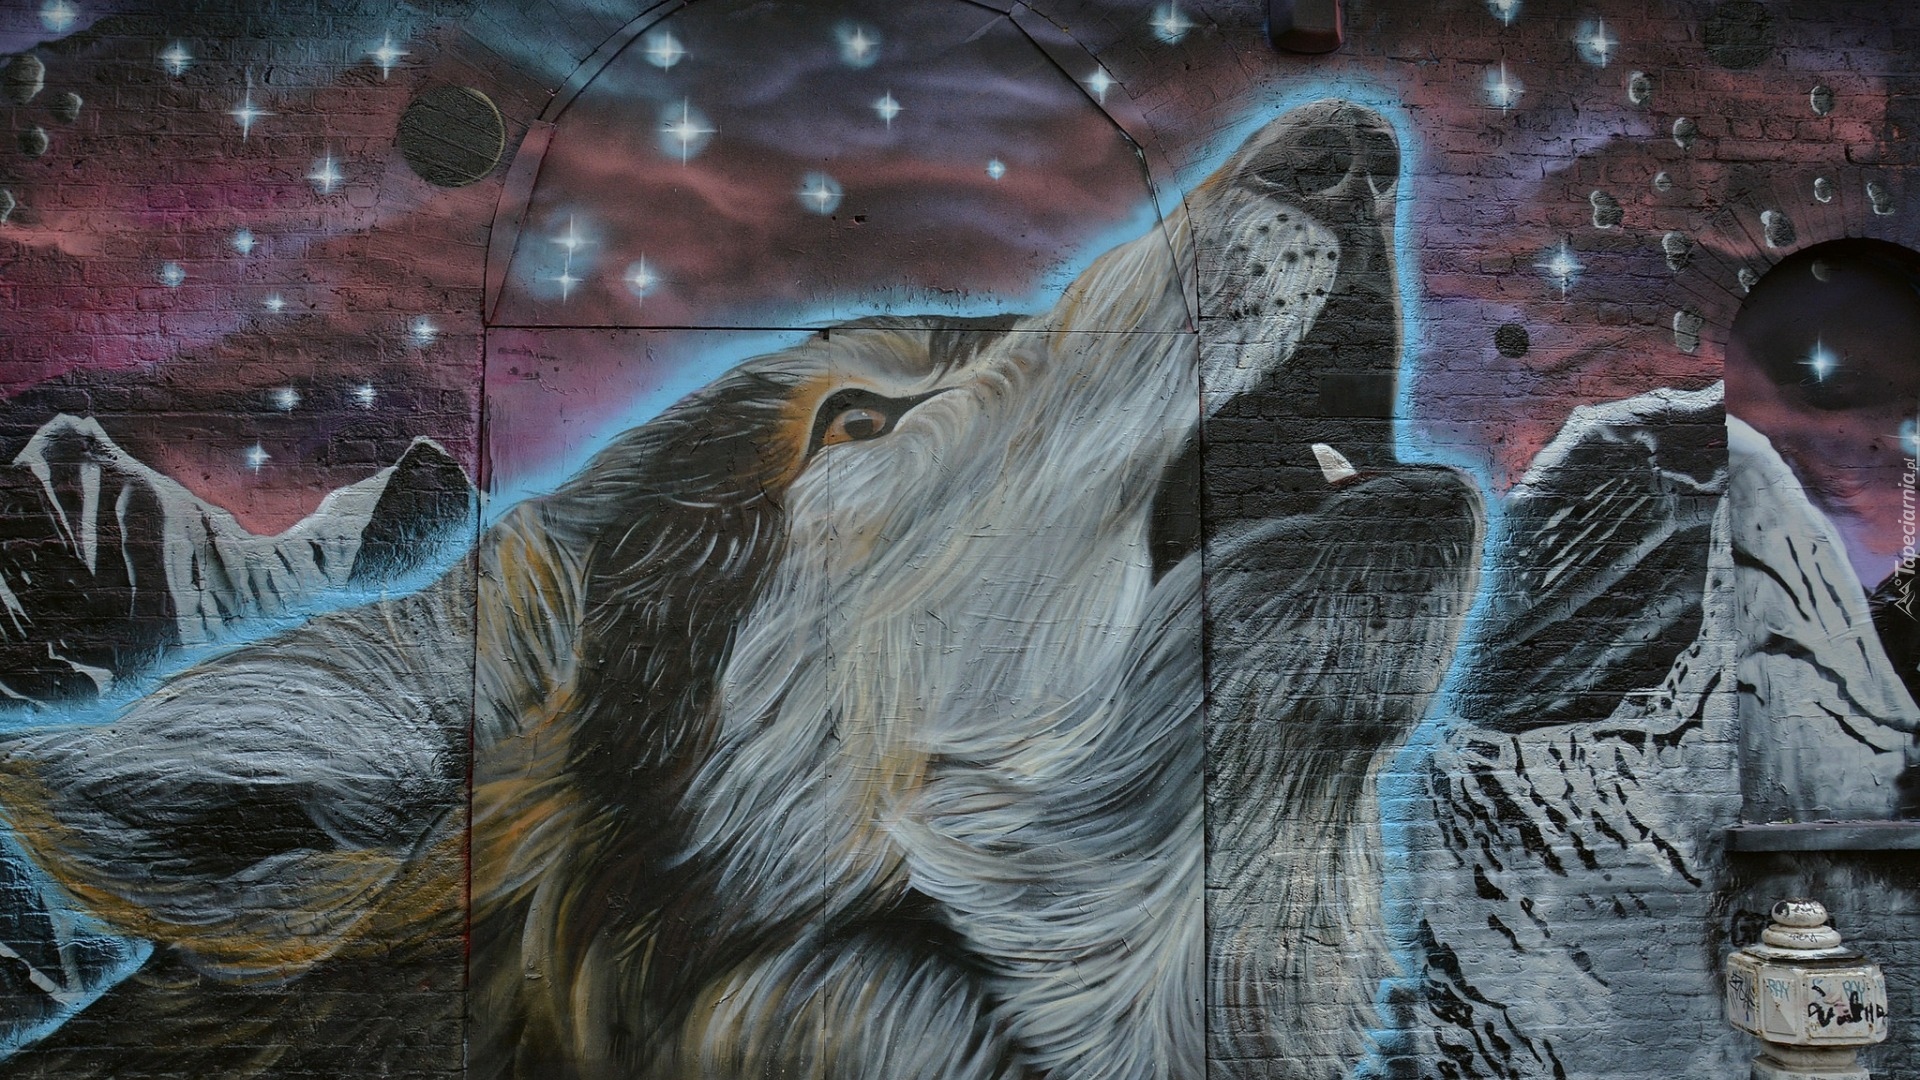 Wilk, Mural, Street art